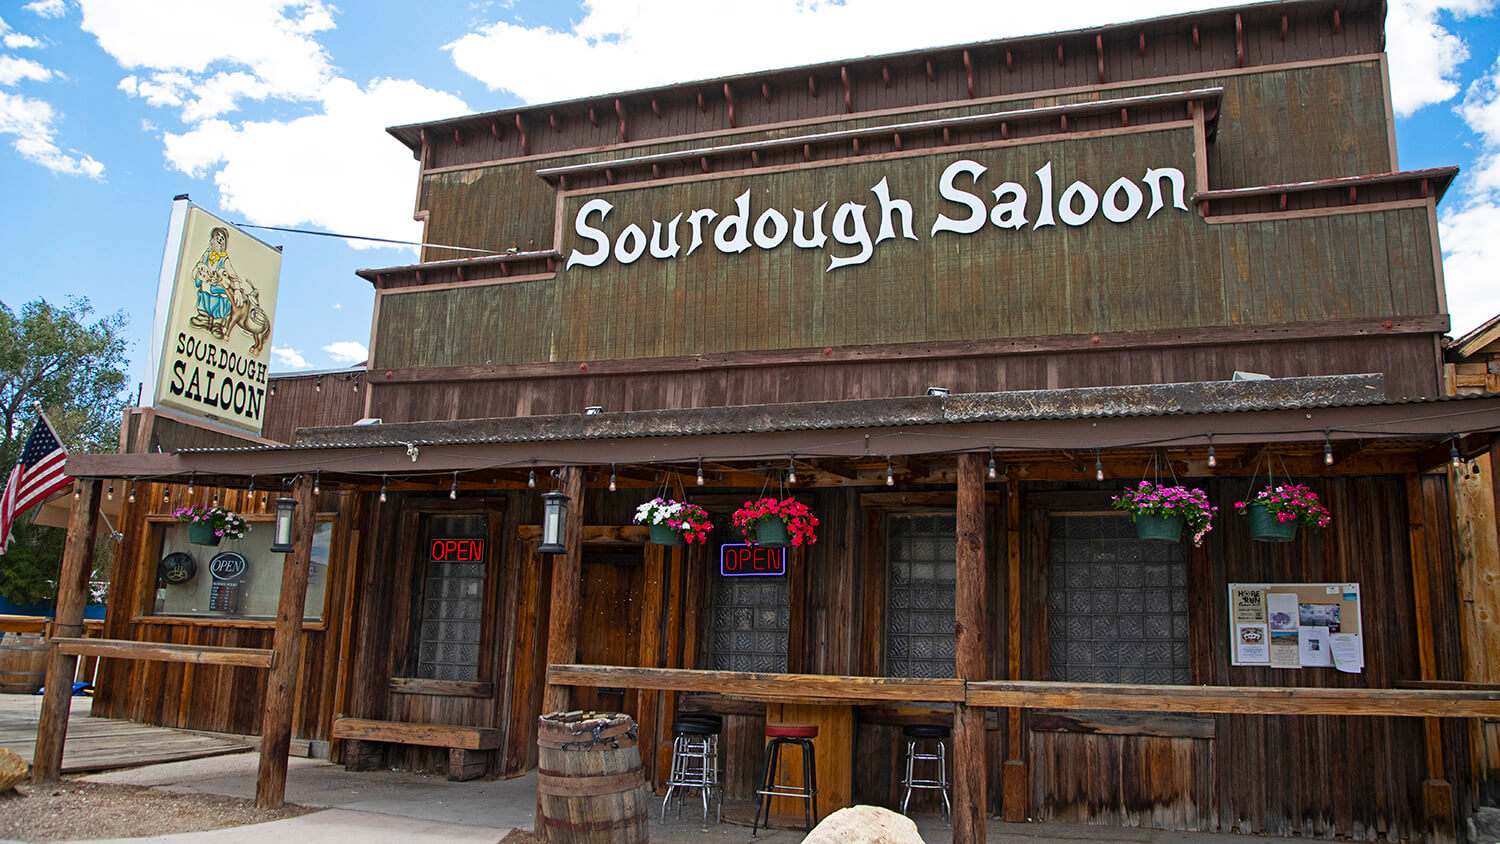 Sourdough Saloon